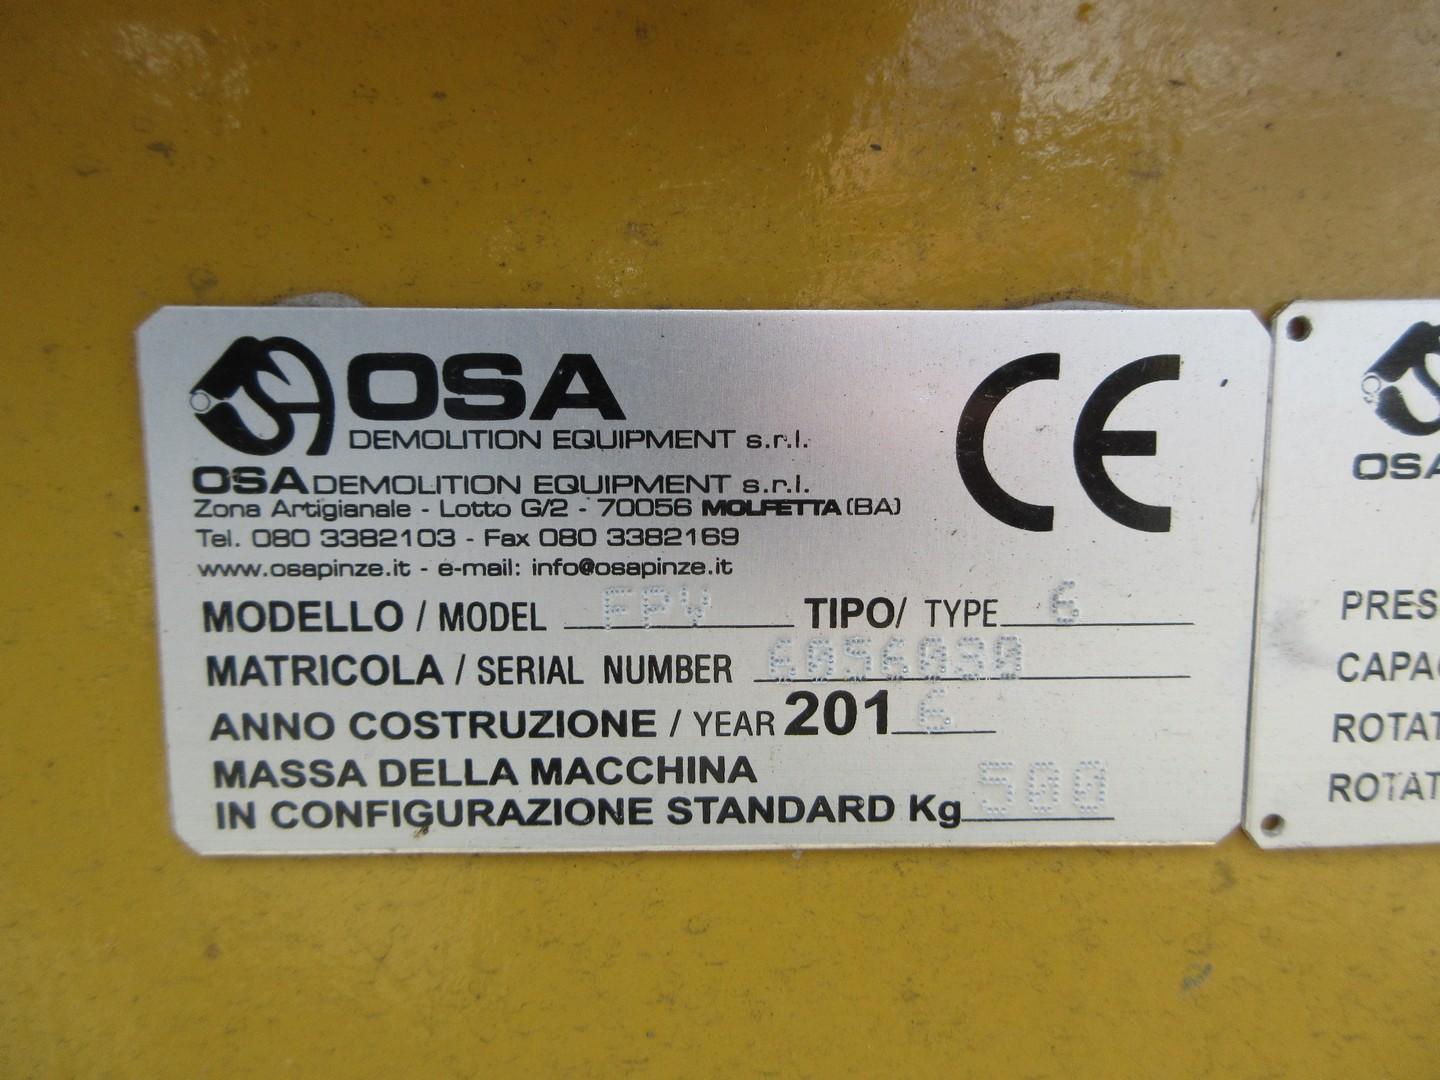 2016 OSA FPV Hydraulic Pulverizer